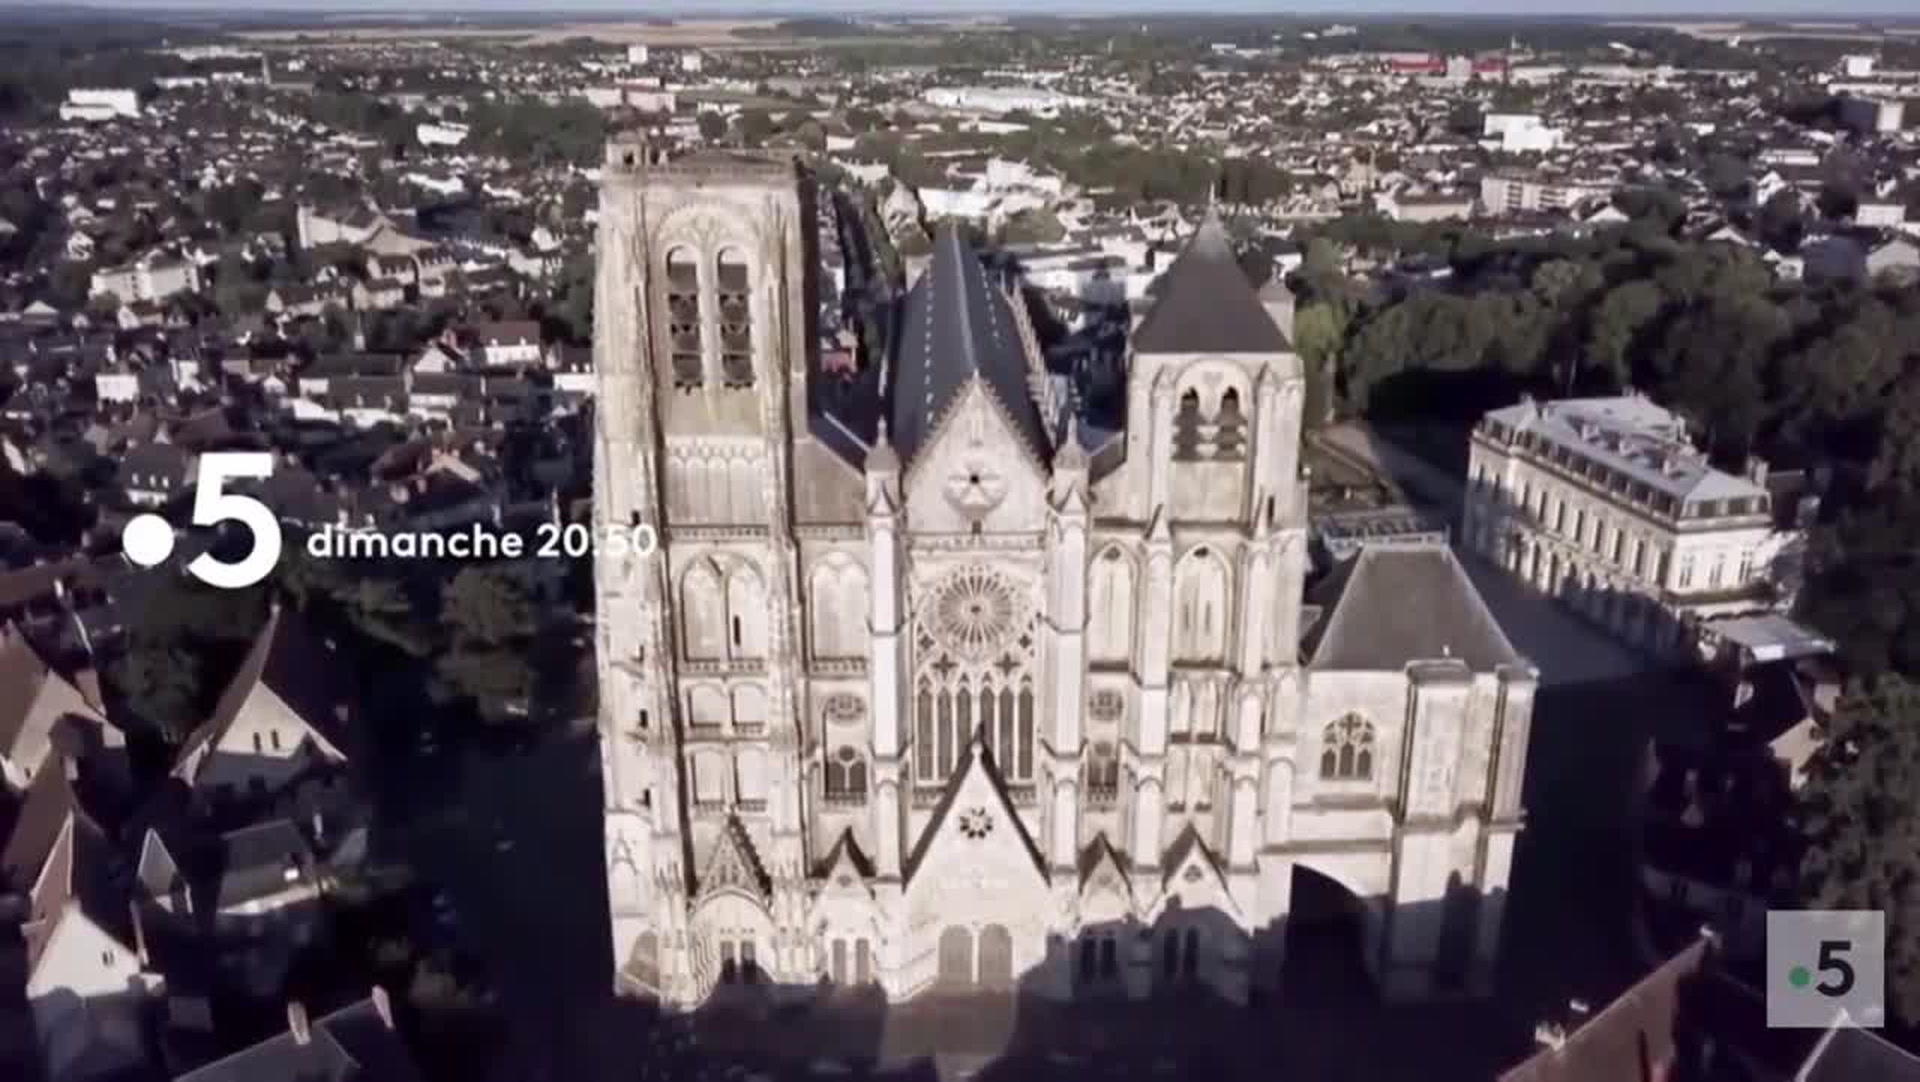 Les 100 lieux qu'il faut voir : Le Berry, de Bourges aux abords de l'Allier